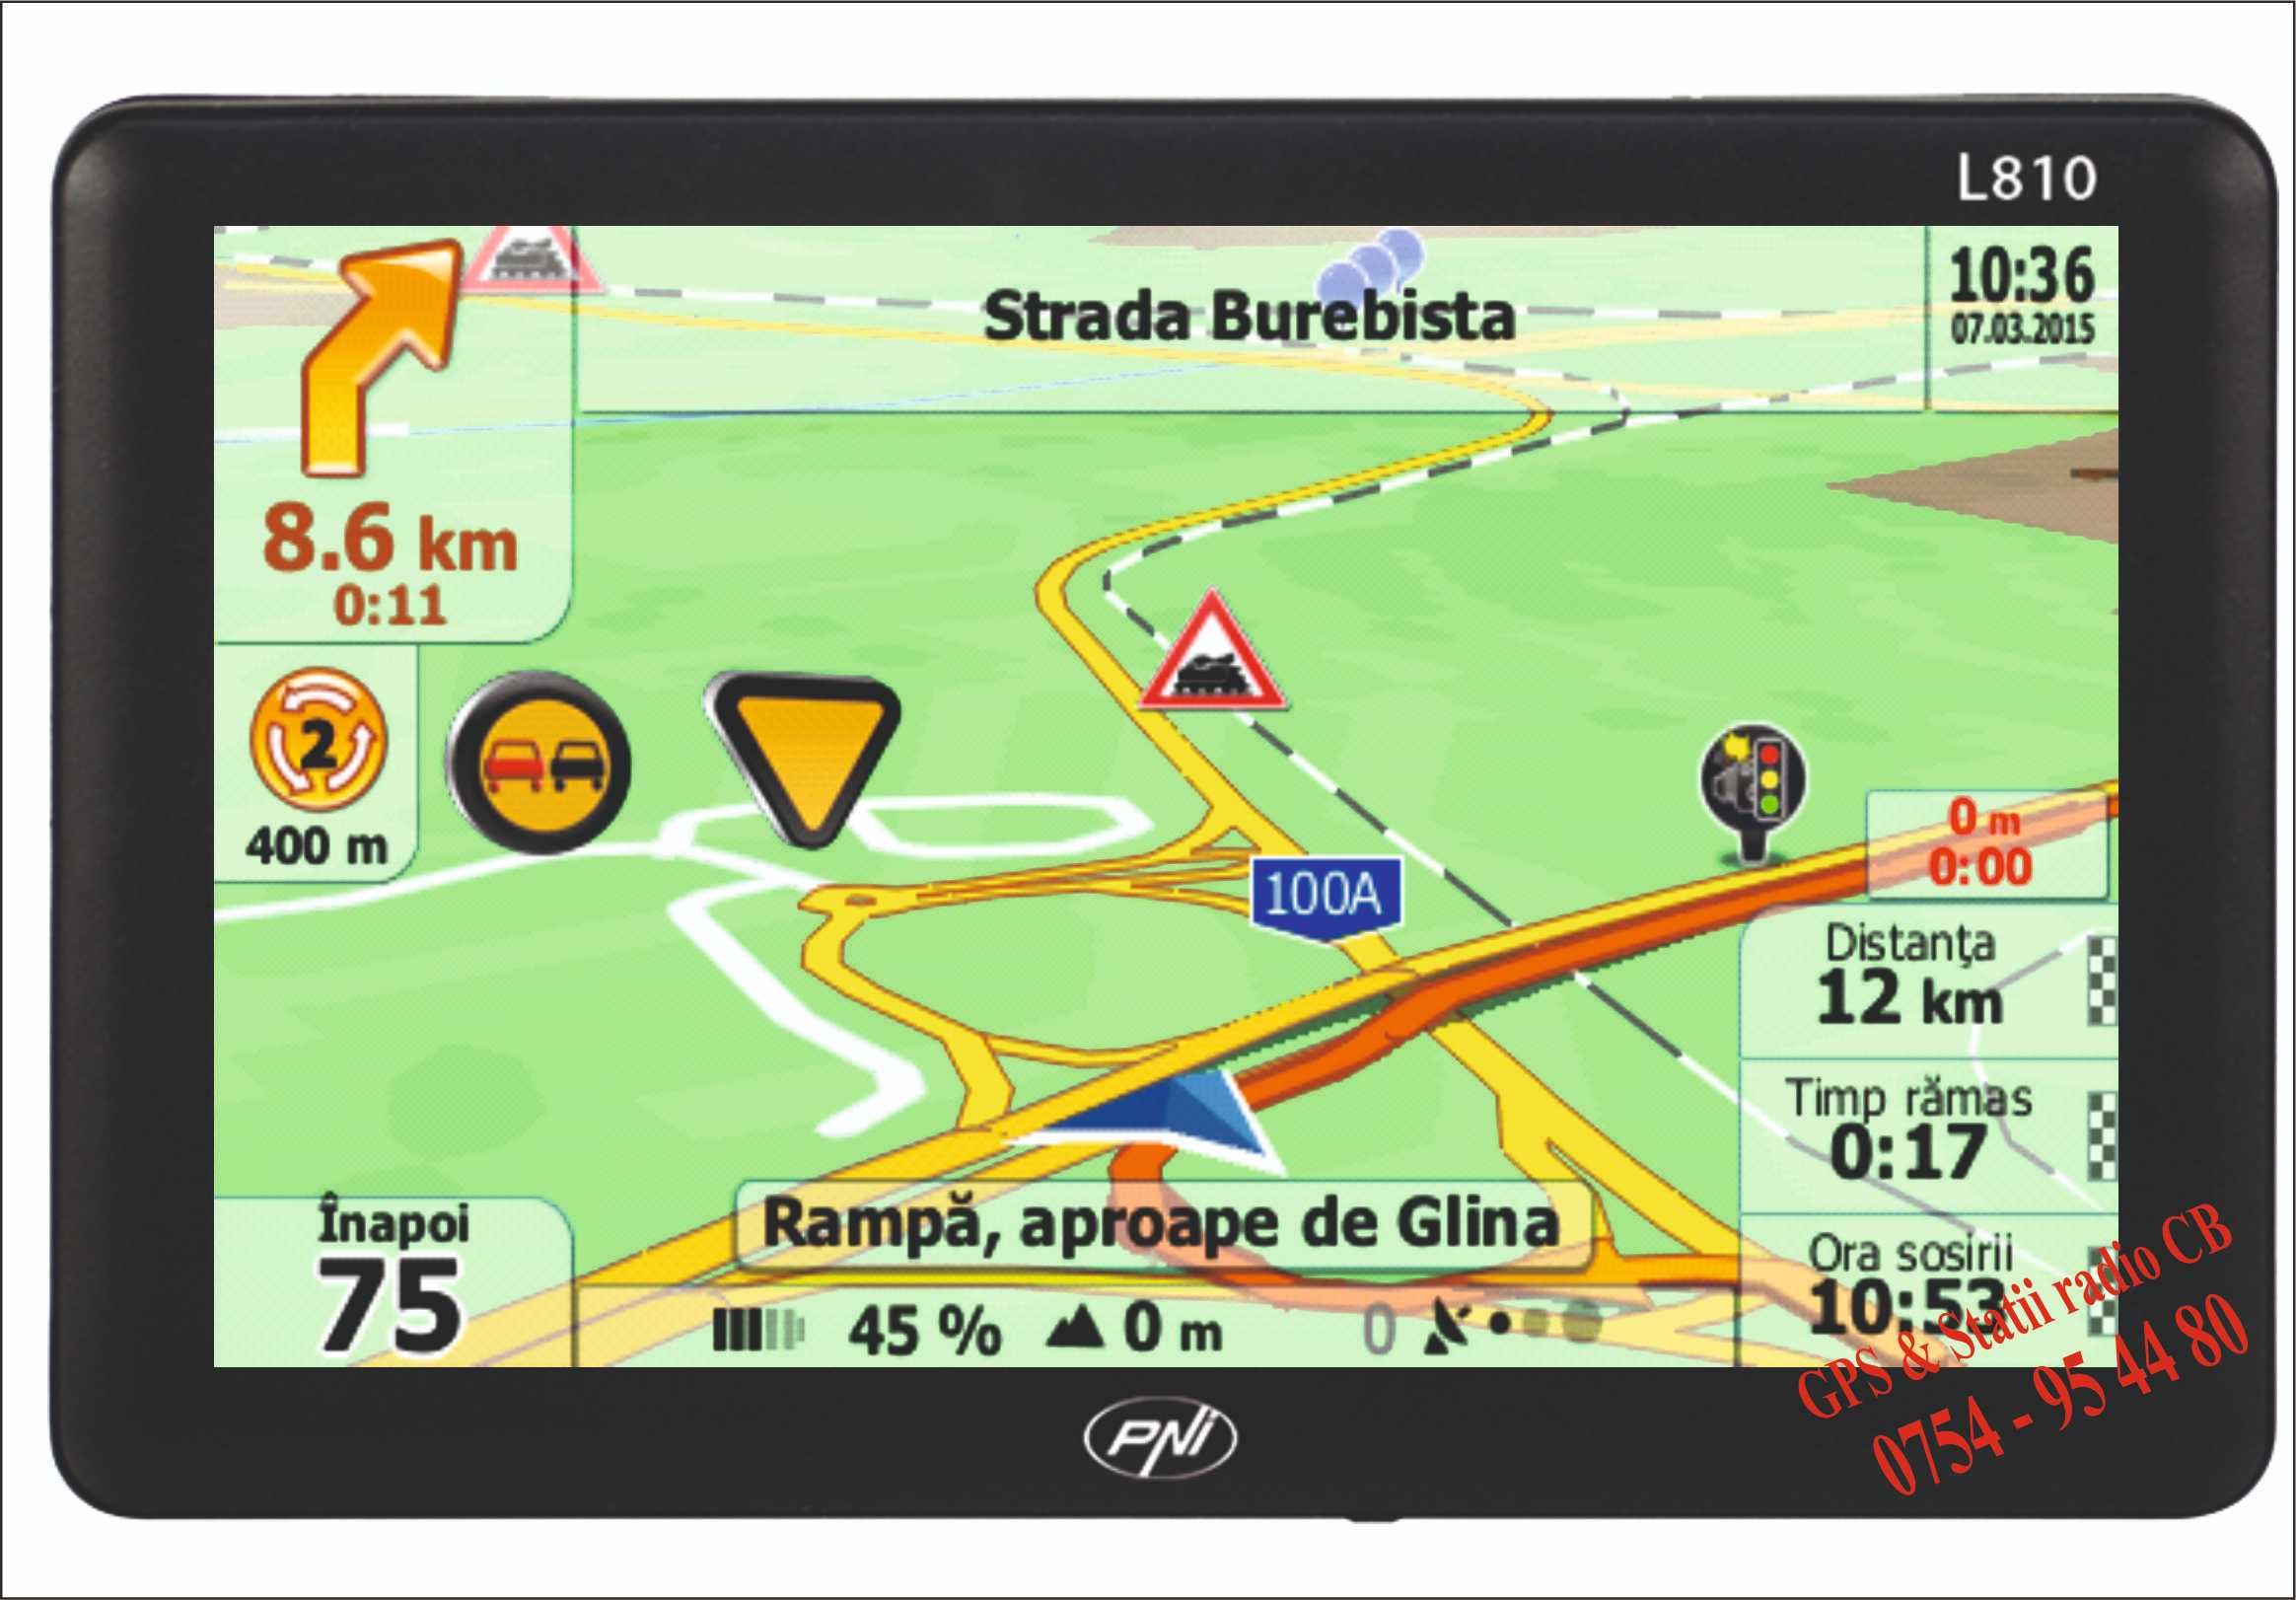 GPS pentru TIR cu iGO Primo Truck Edition- harta Full Europa - 2024